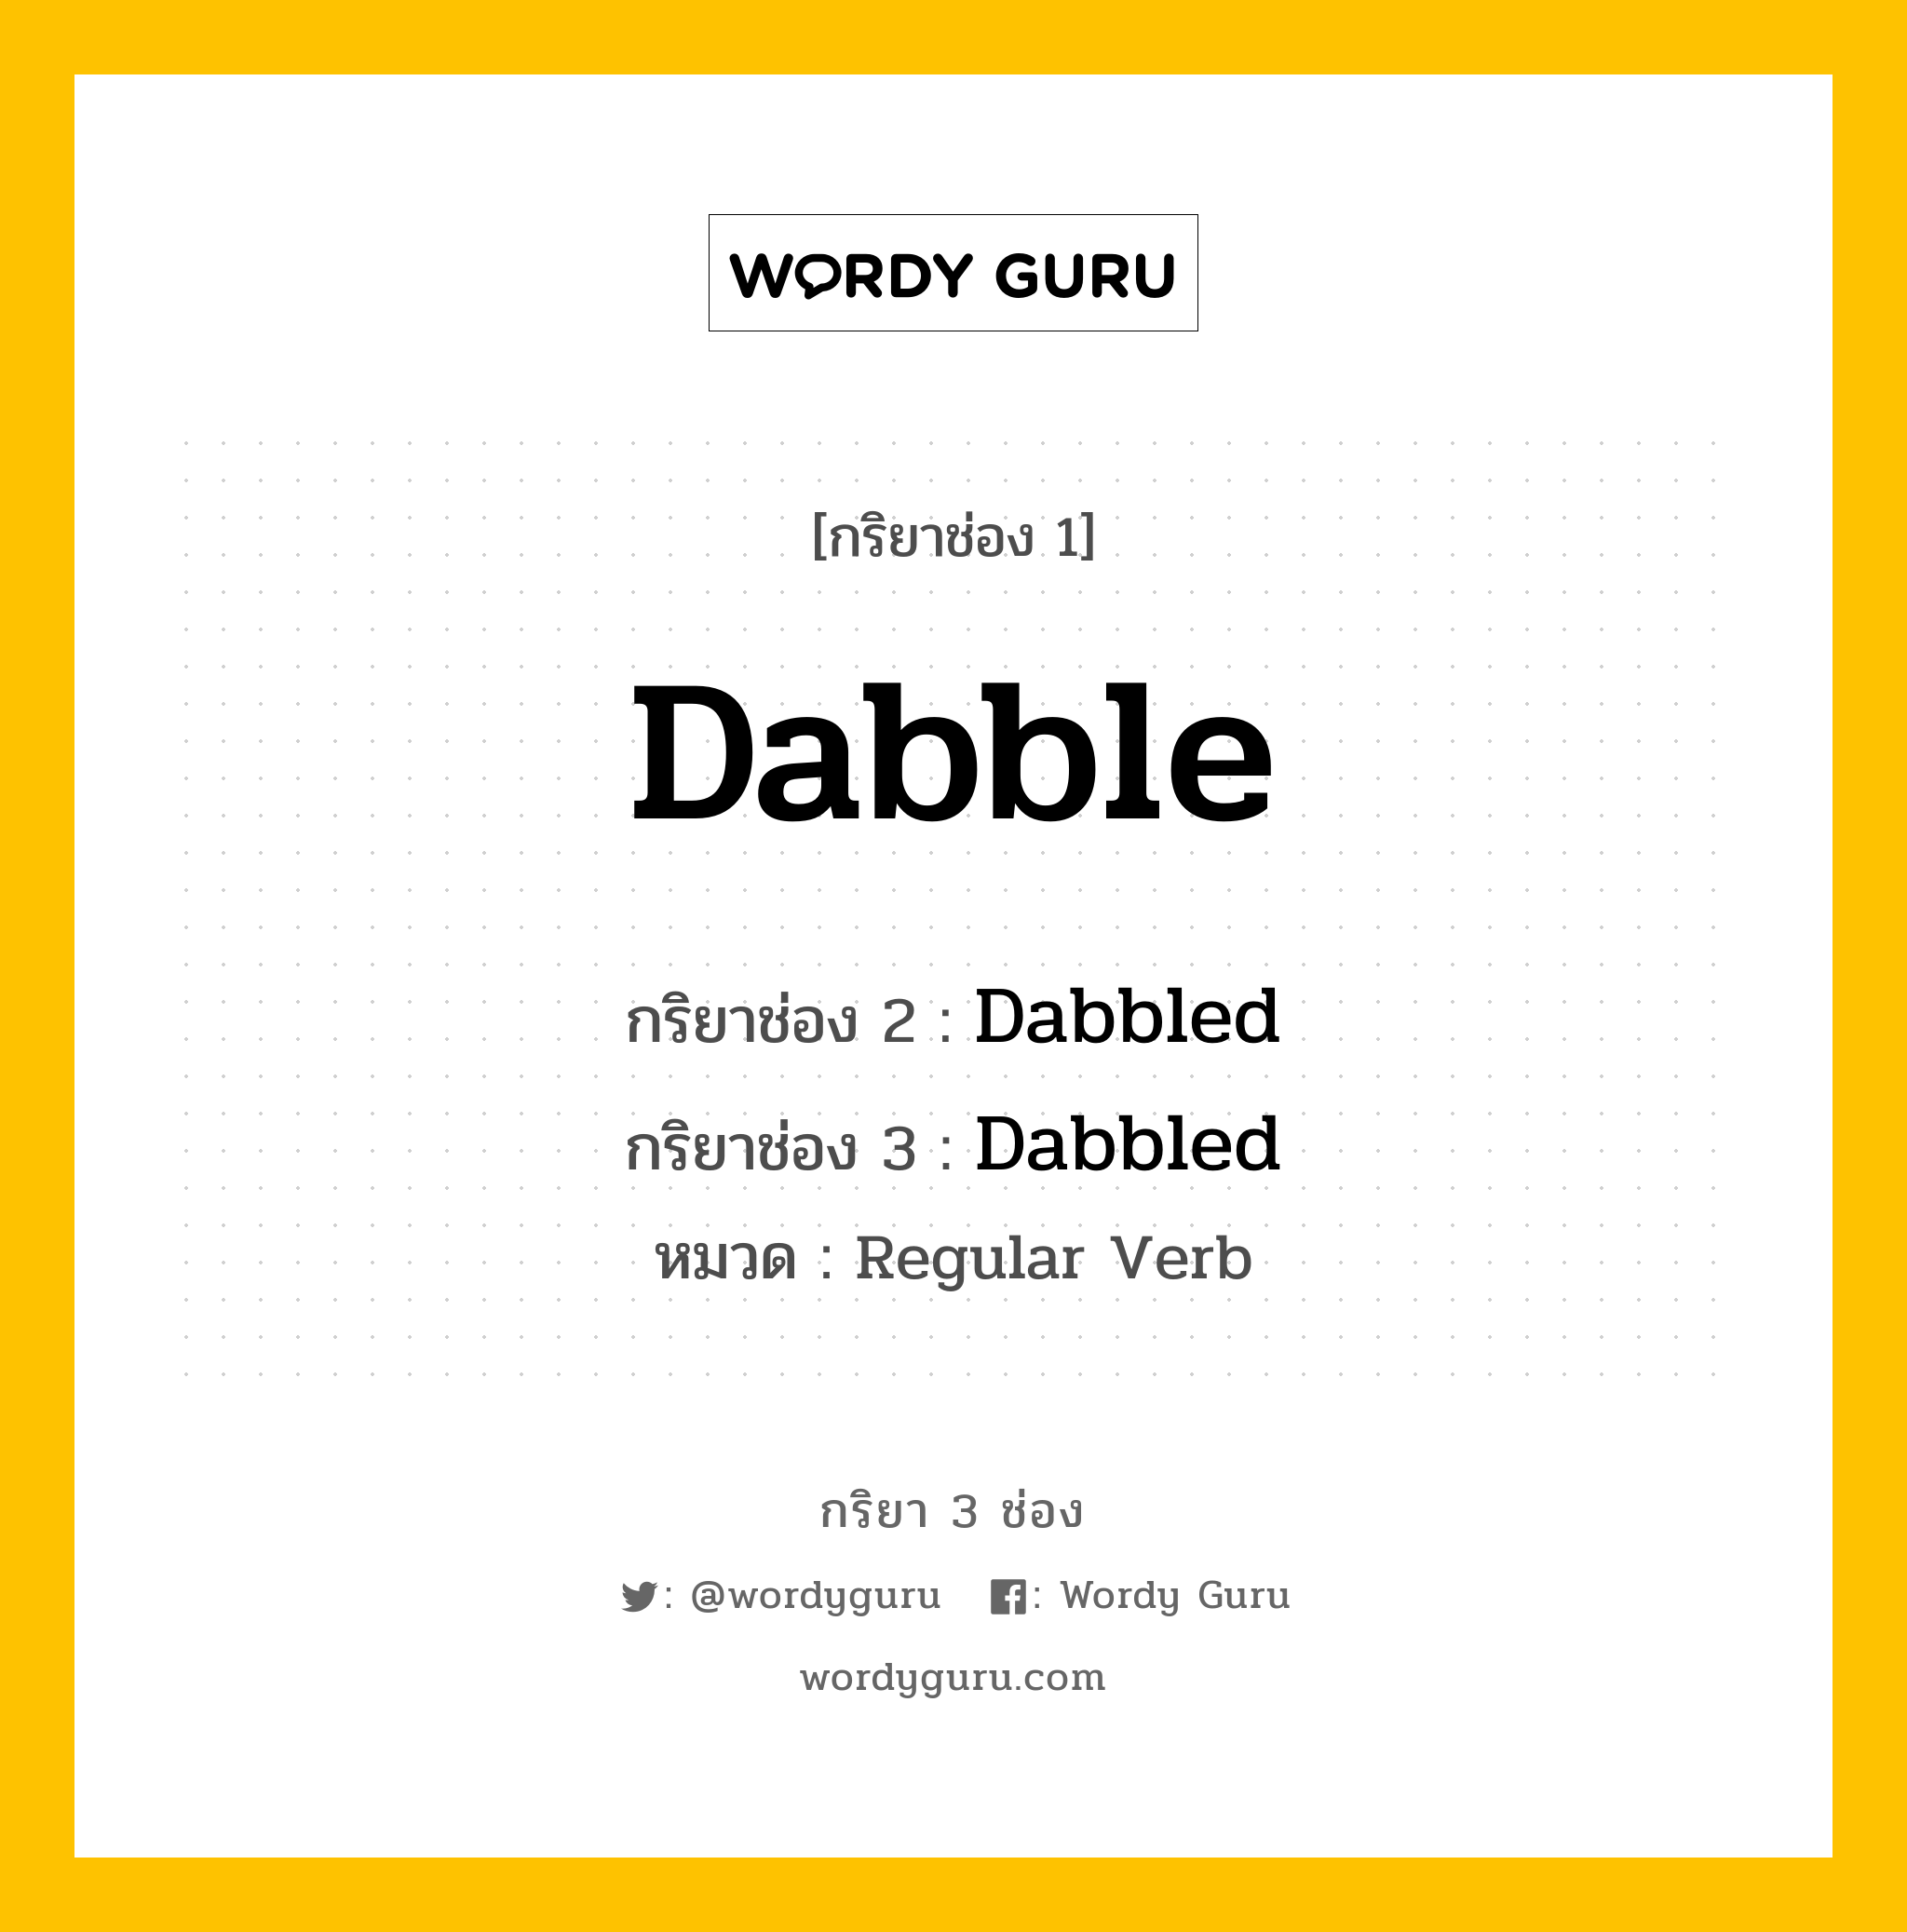 กริยา 3 ช่อง: Dabble ช่อง 2 Dabble ช่อง 3 คืออะไร, กริยาช่อง 1 Dabble กริยาช่อง 2 Dabbled กริยาช่อง 3 Dabbled หมวด Regular Verb หมวด Regular Verb